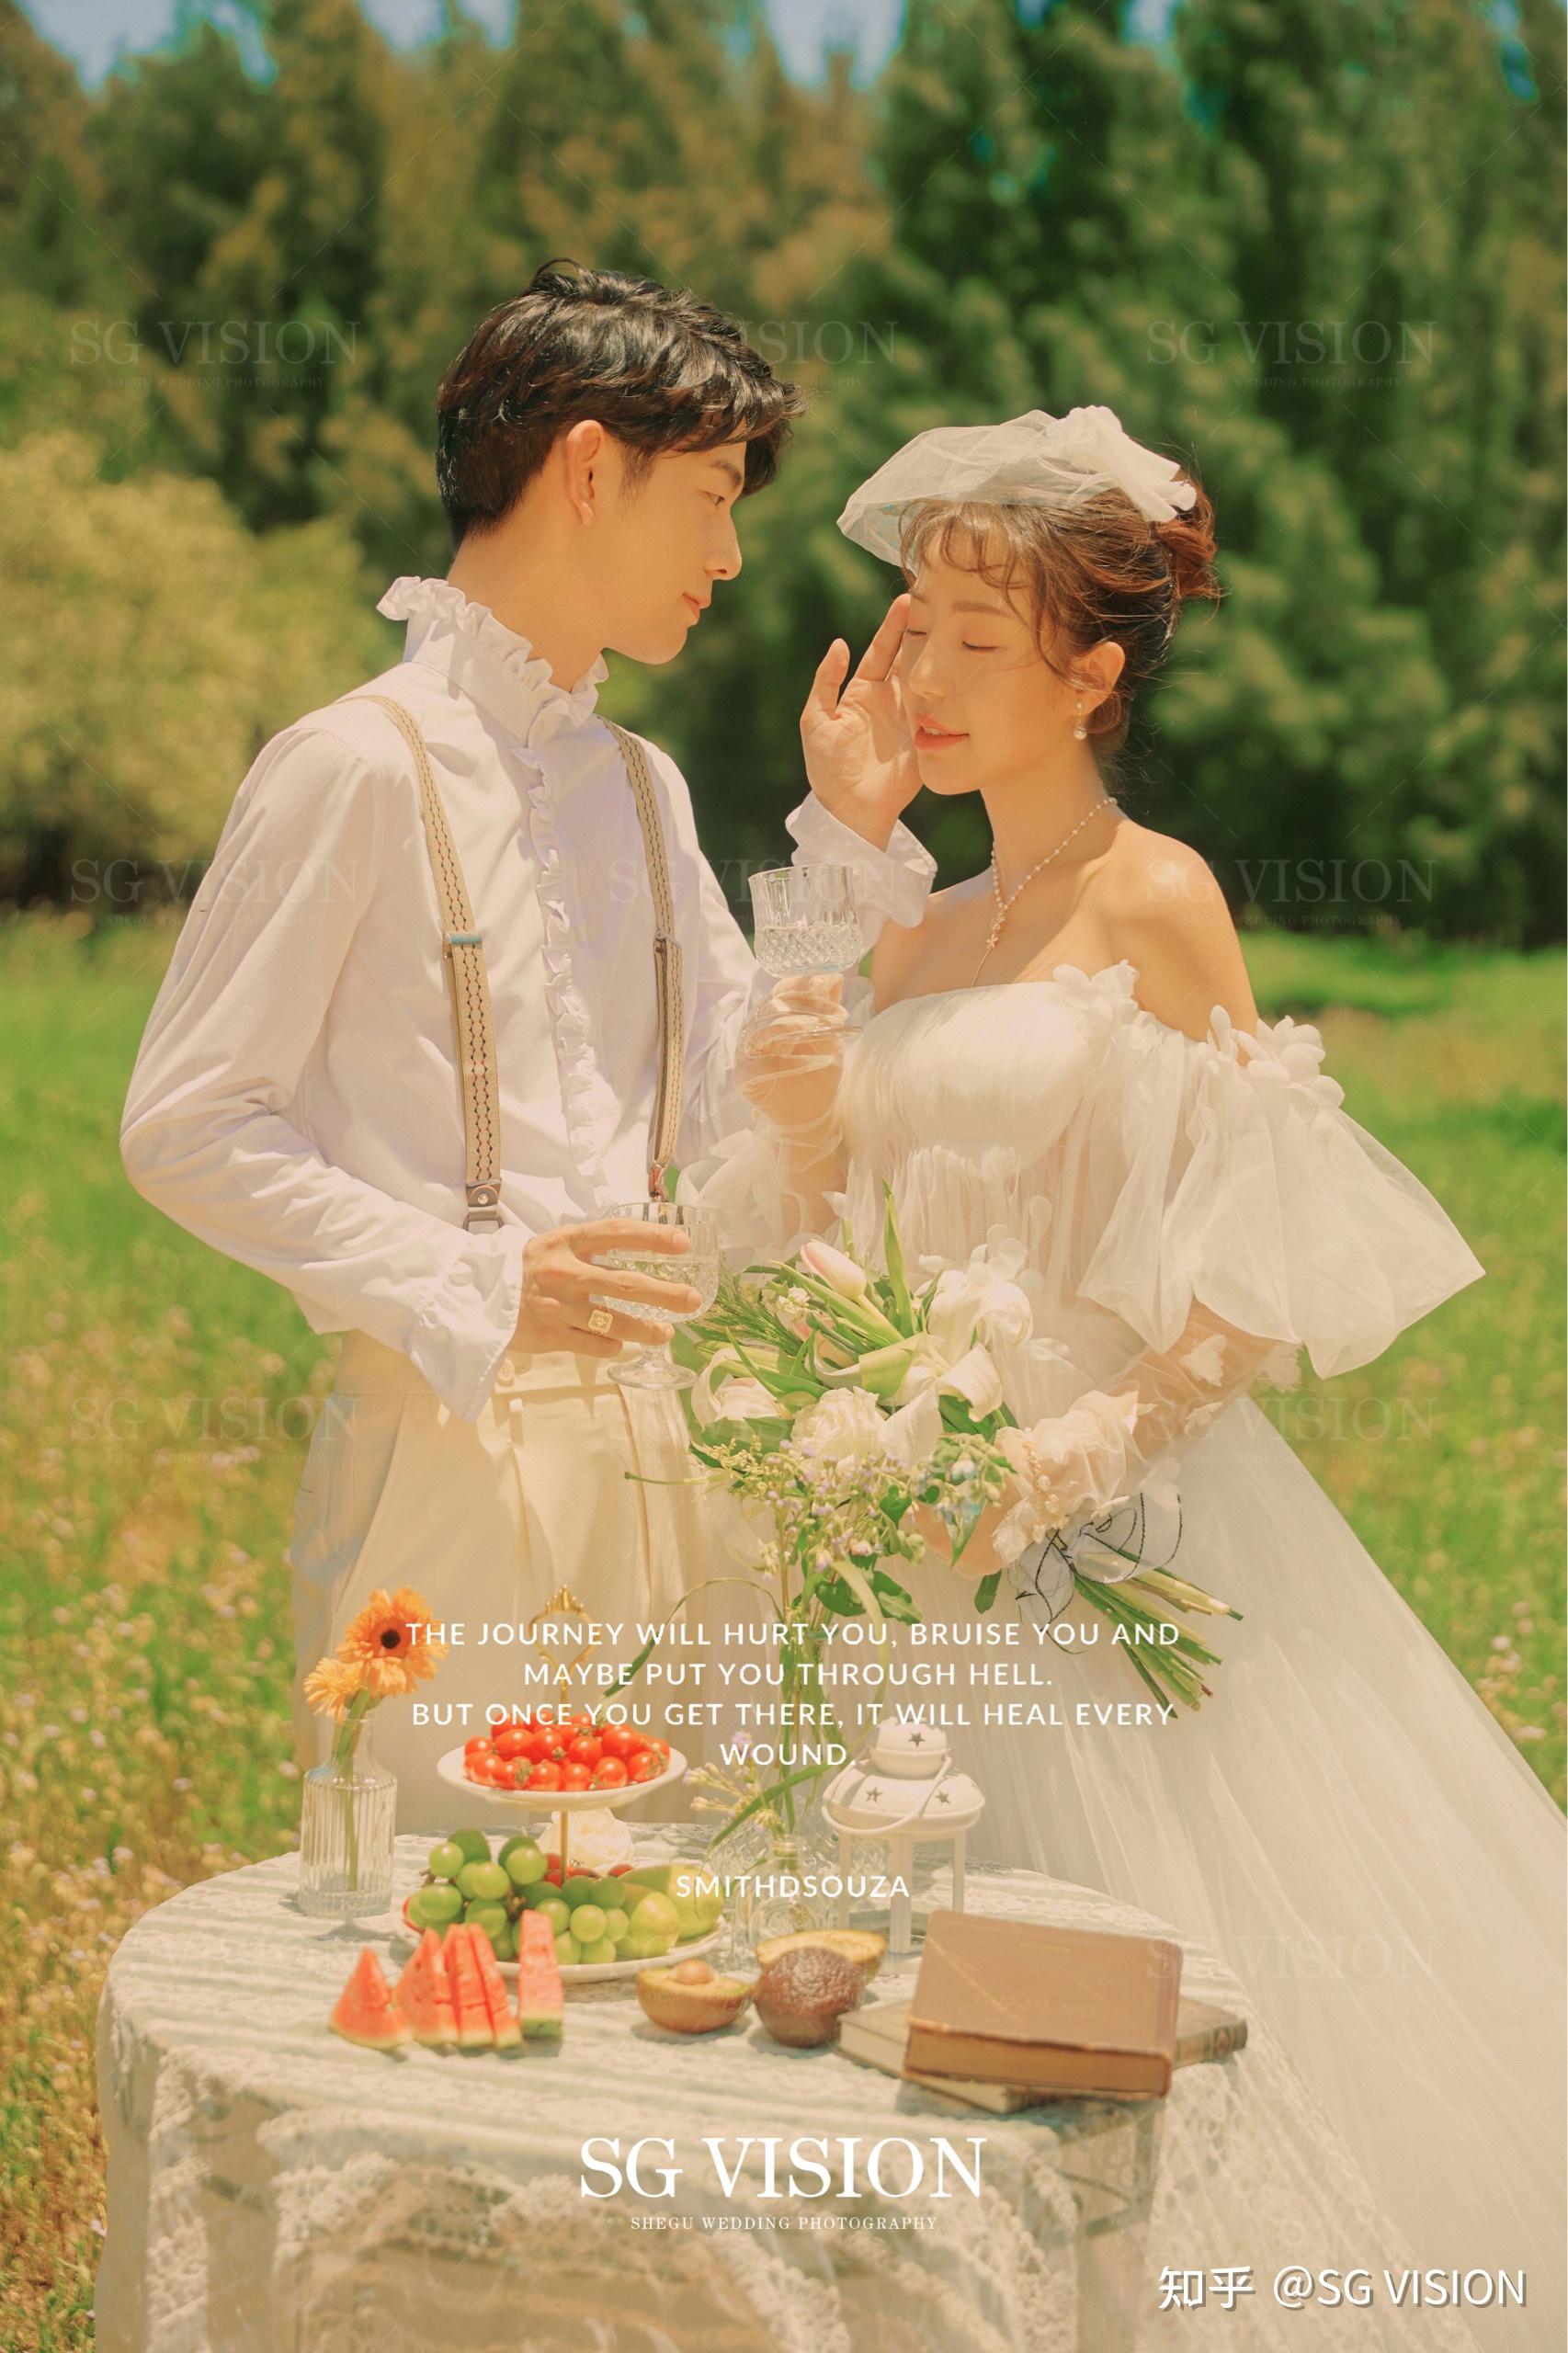 放进美术馆的婚纱照【法式田园的浪漫心动】 - 特色外景系列 - 首尔首尔婚纱摄影